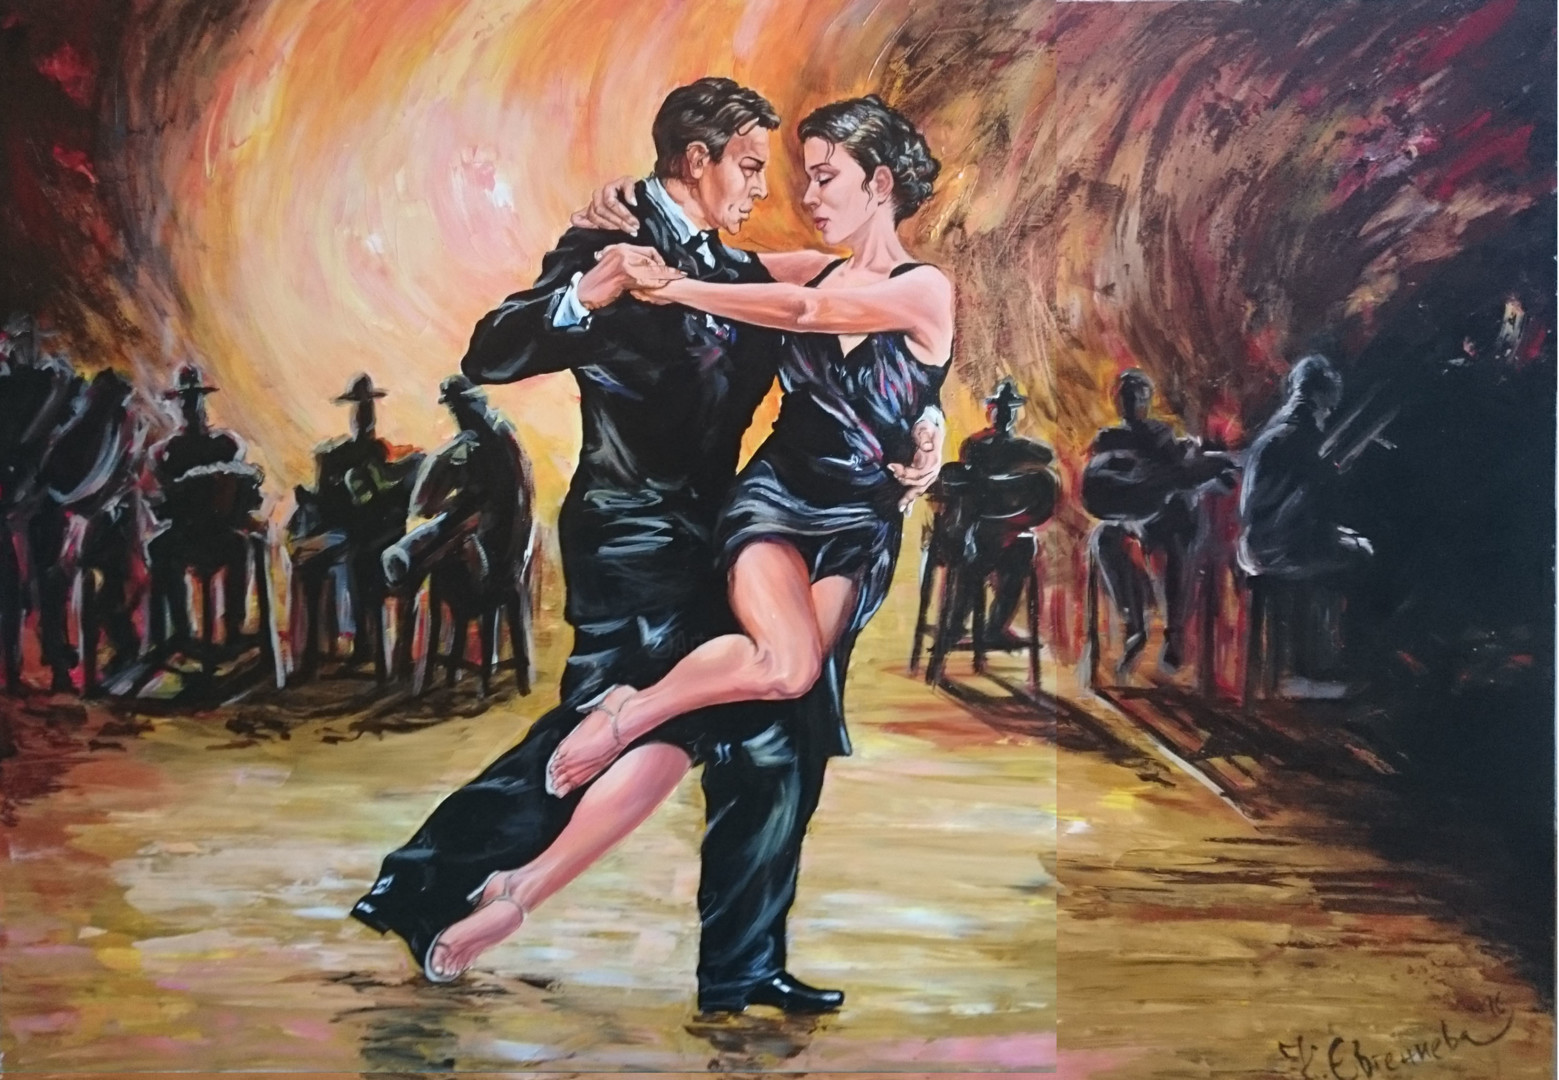 Танец пары под песню. Аргентинское танго милонга. Танец танго милонга. Танго картина знаменитого художника. Аргентинский танцор танго.